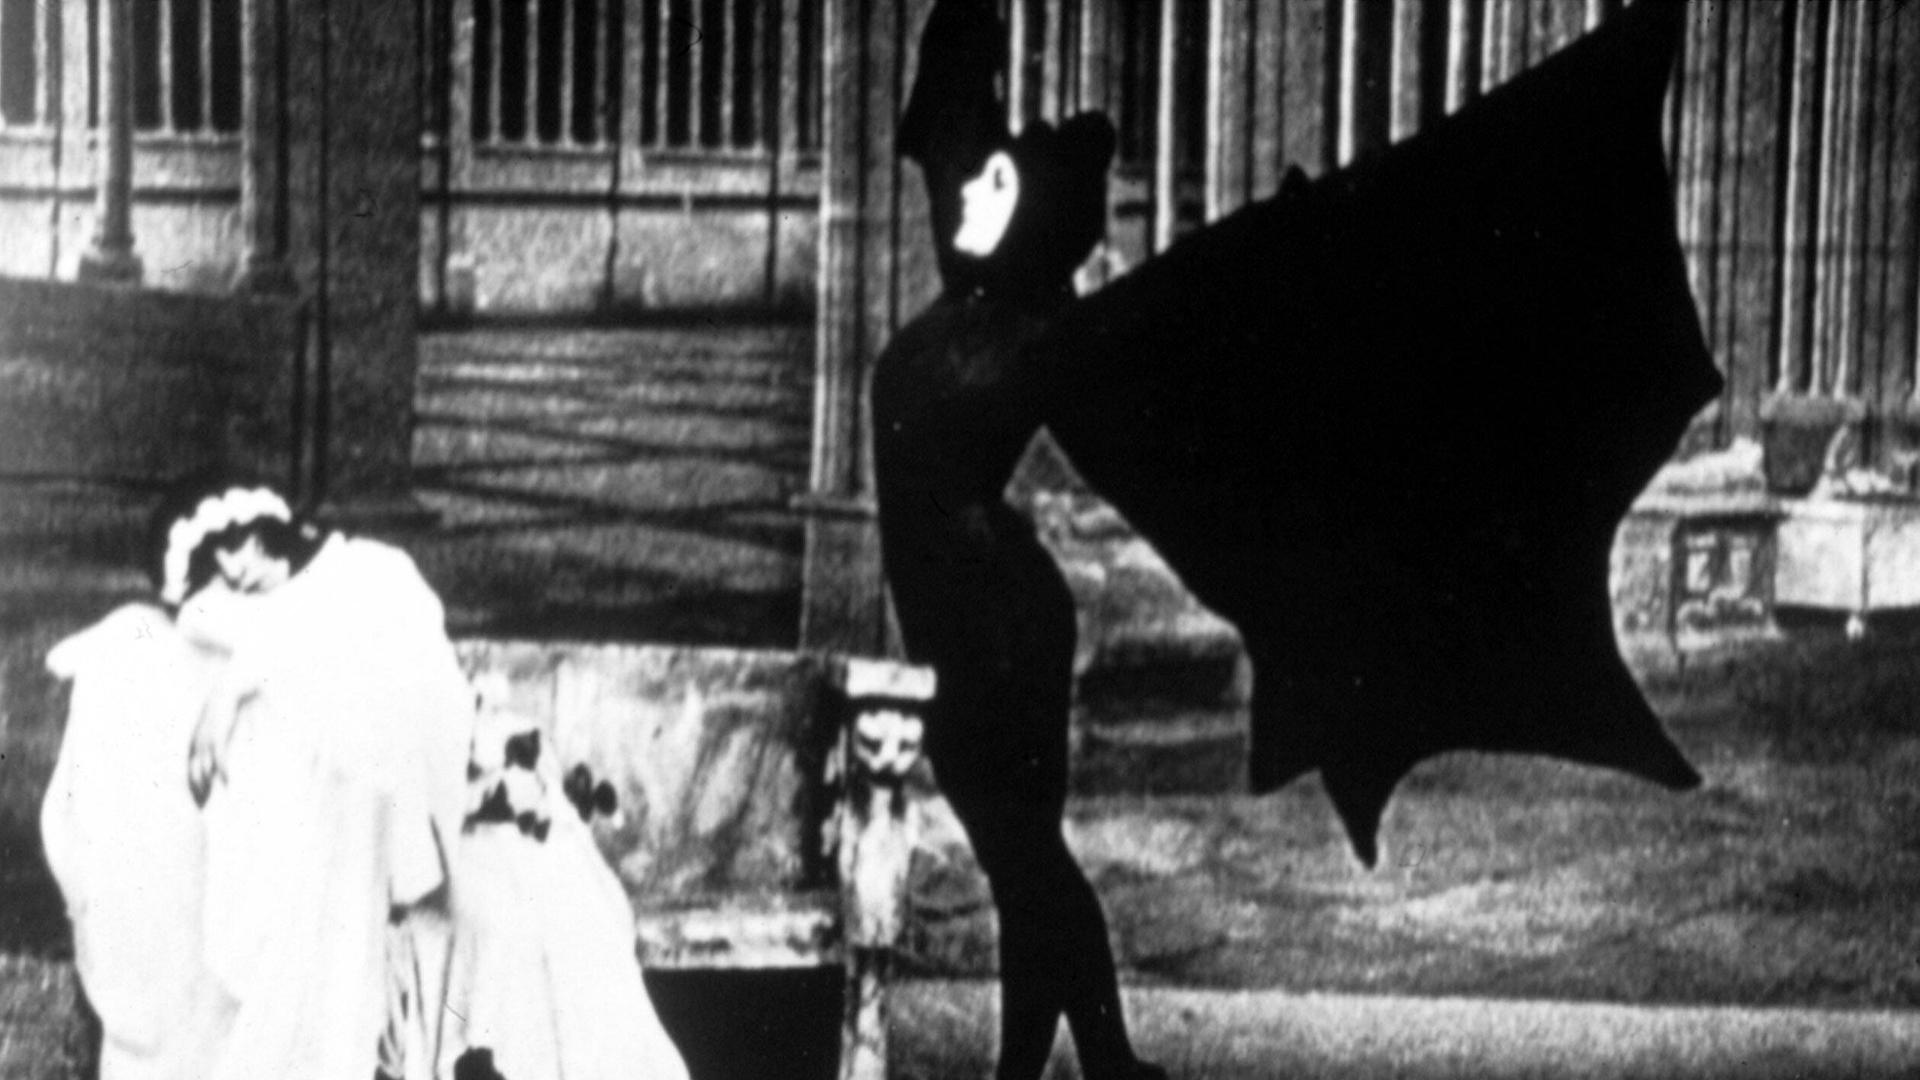 Szene aus: "Die Vampire" - "Les Vampires": zehnteilige Stummfilm-Serie von Louis Feuillade, erschienen 1915. 